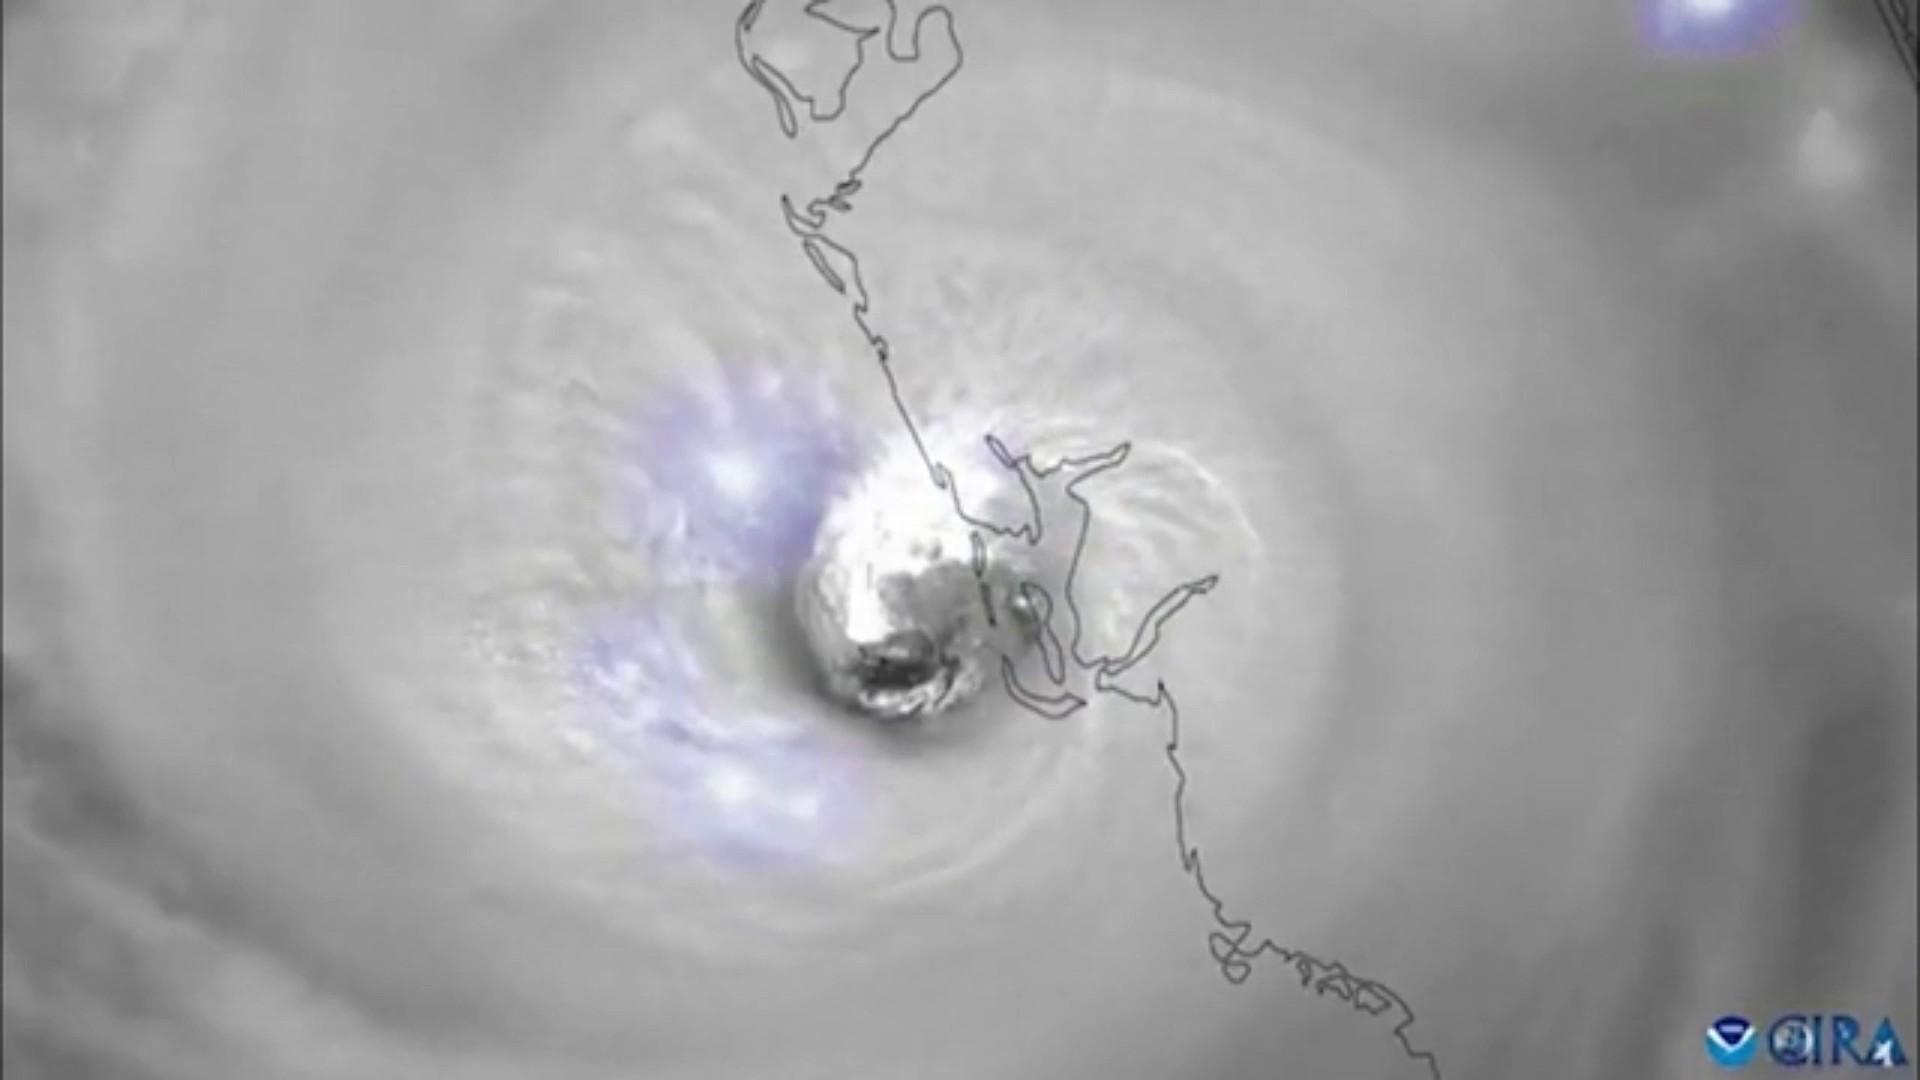 Satellite captures stunning view of Hurricane Ian's eye - CBS News